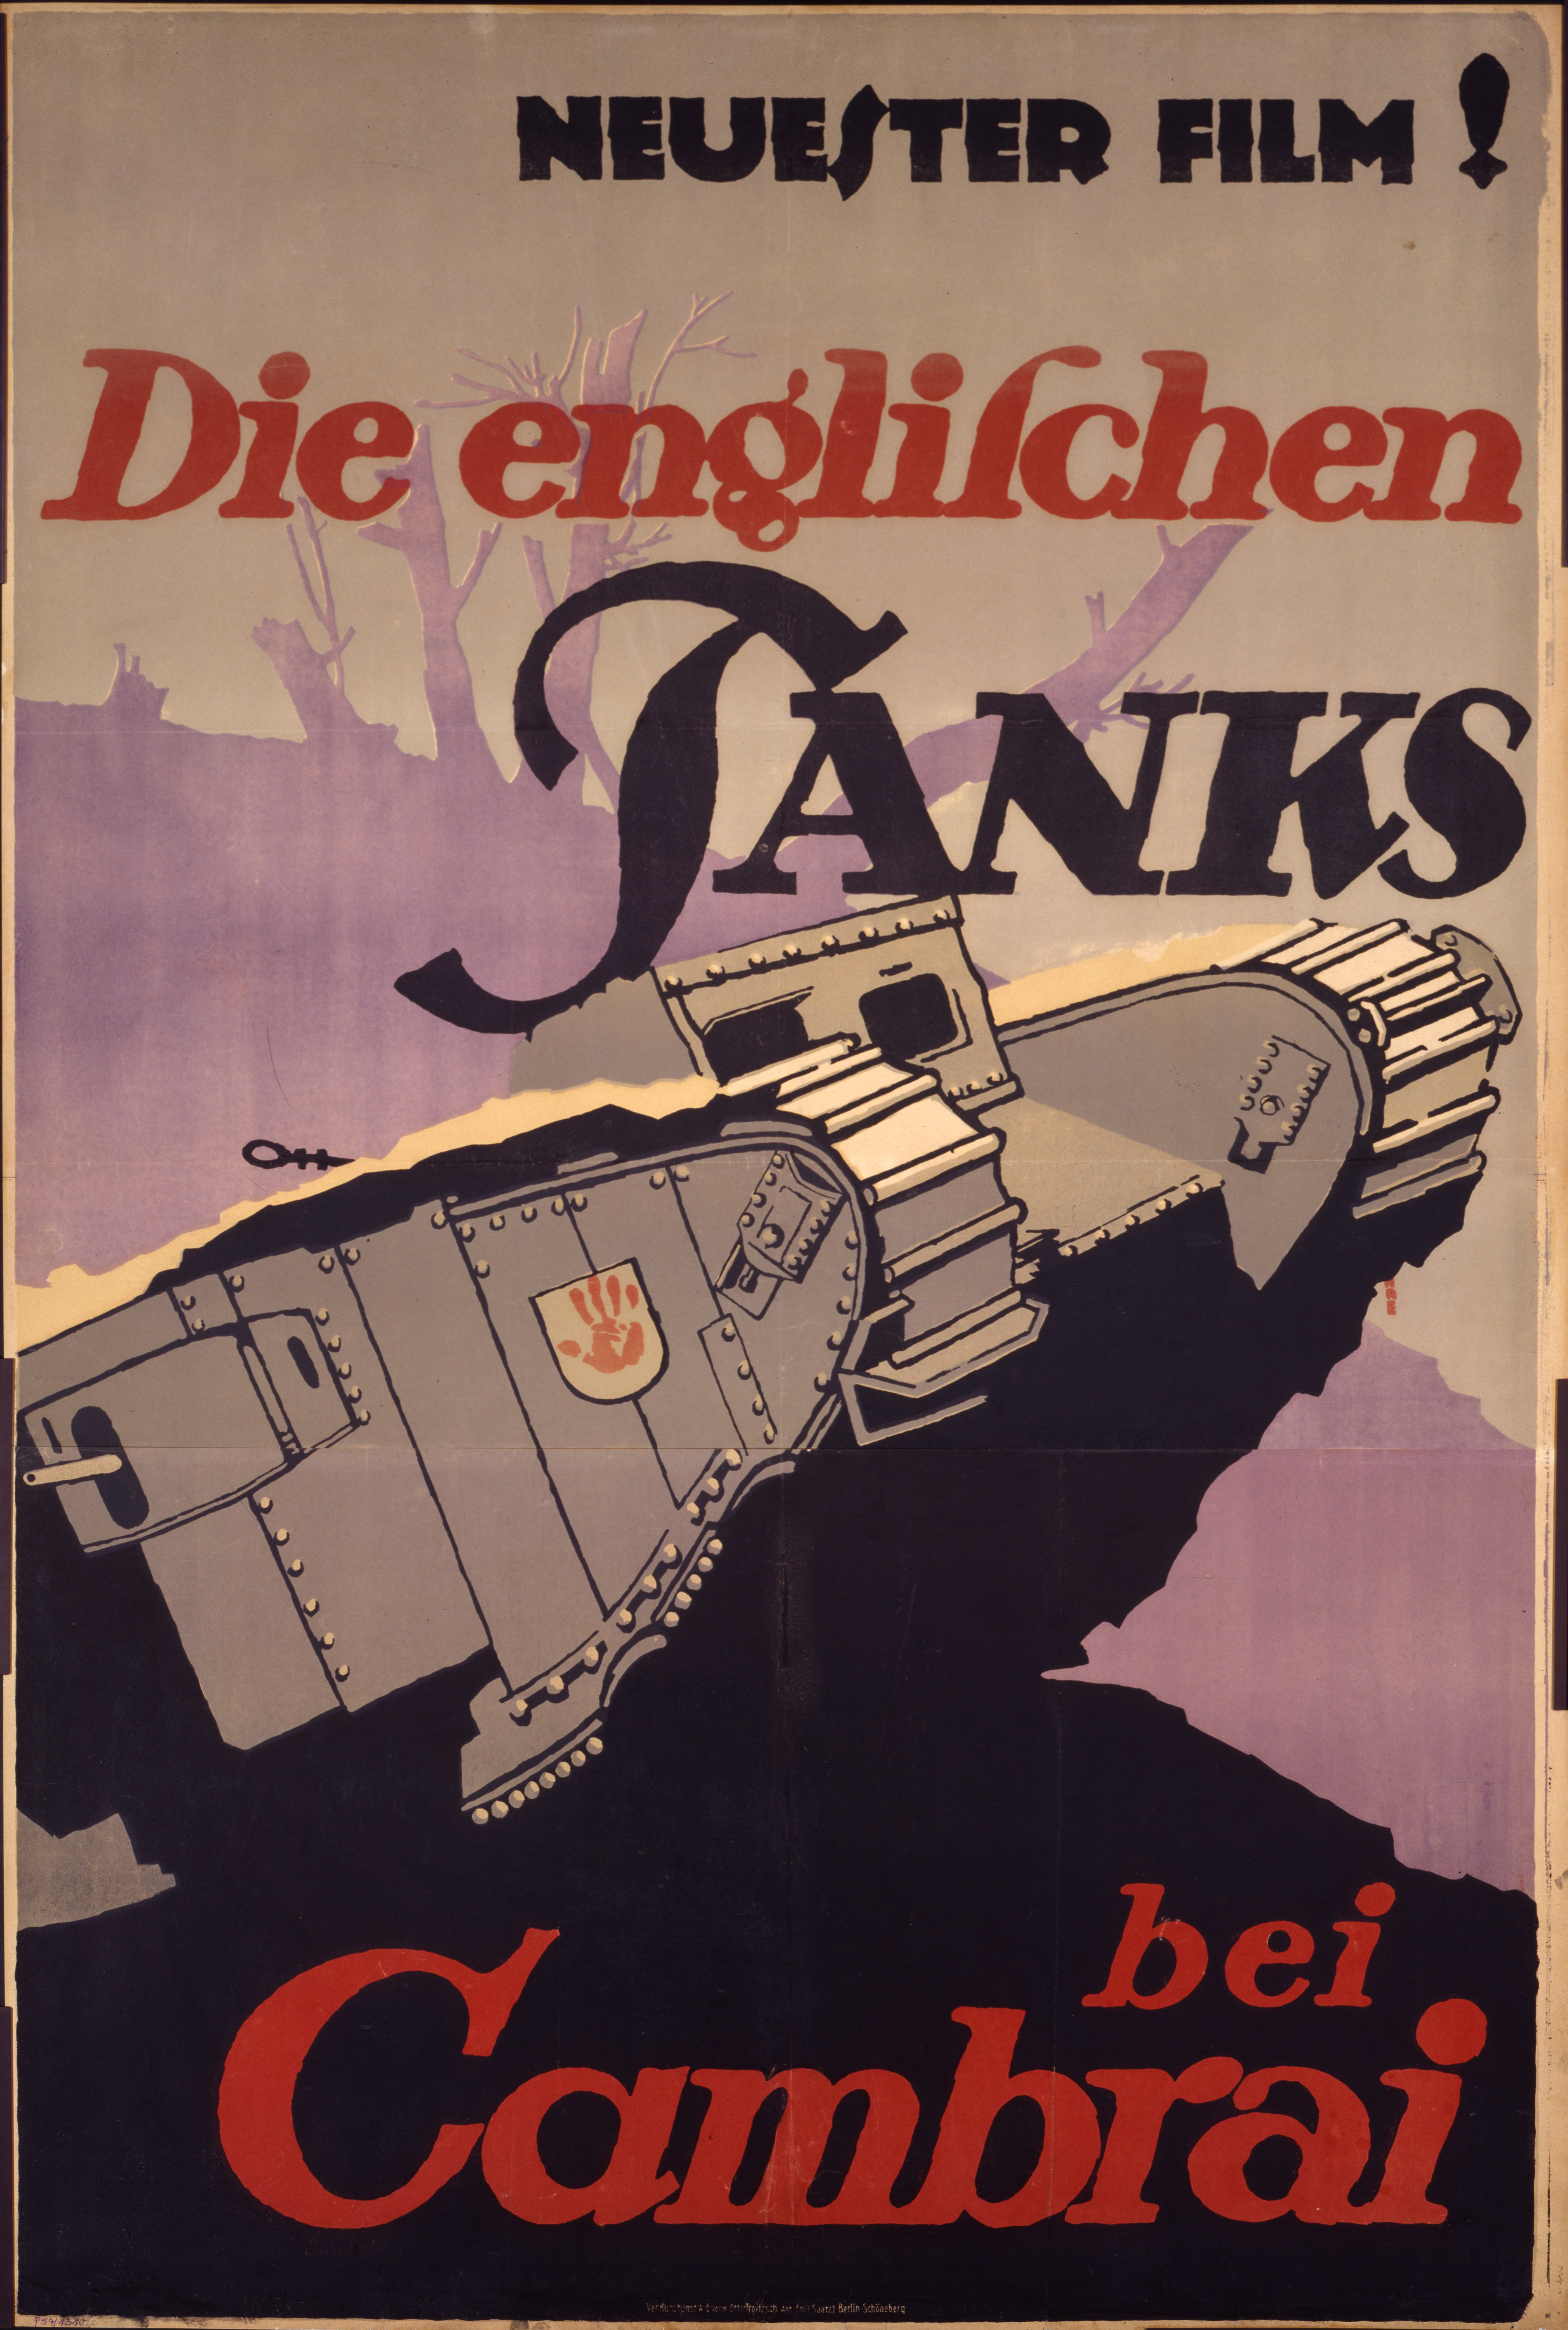 Plakat zum Film "Die englischen Tanks bei Cambrai", 1917